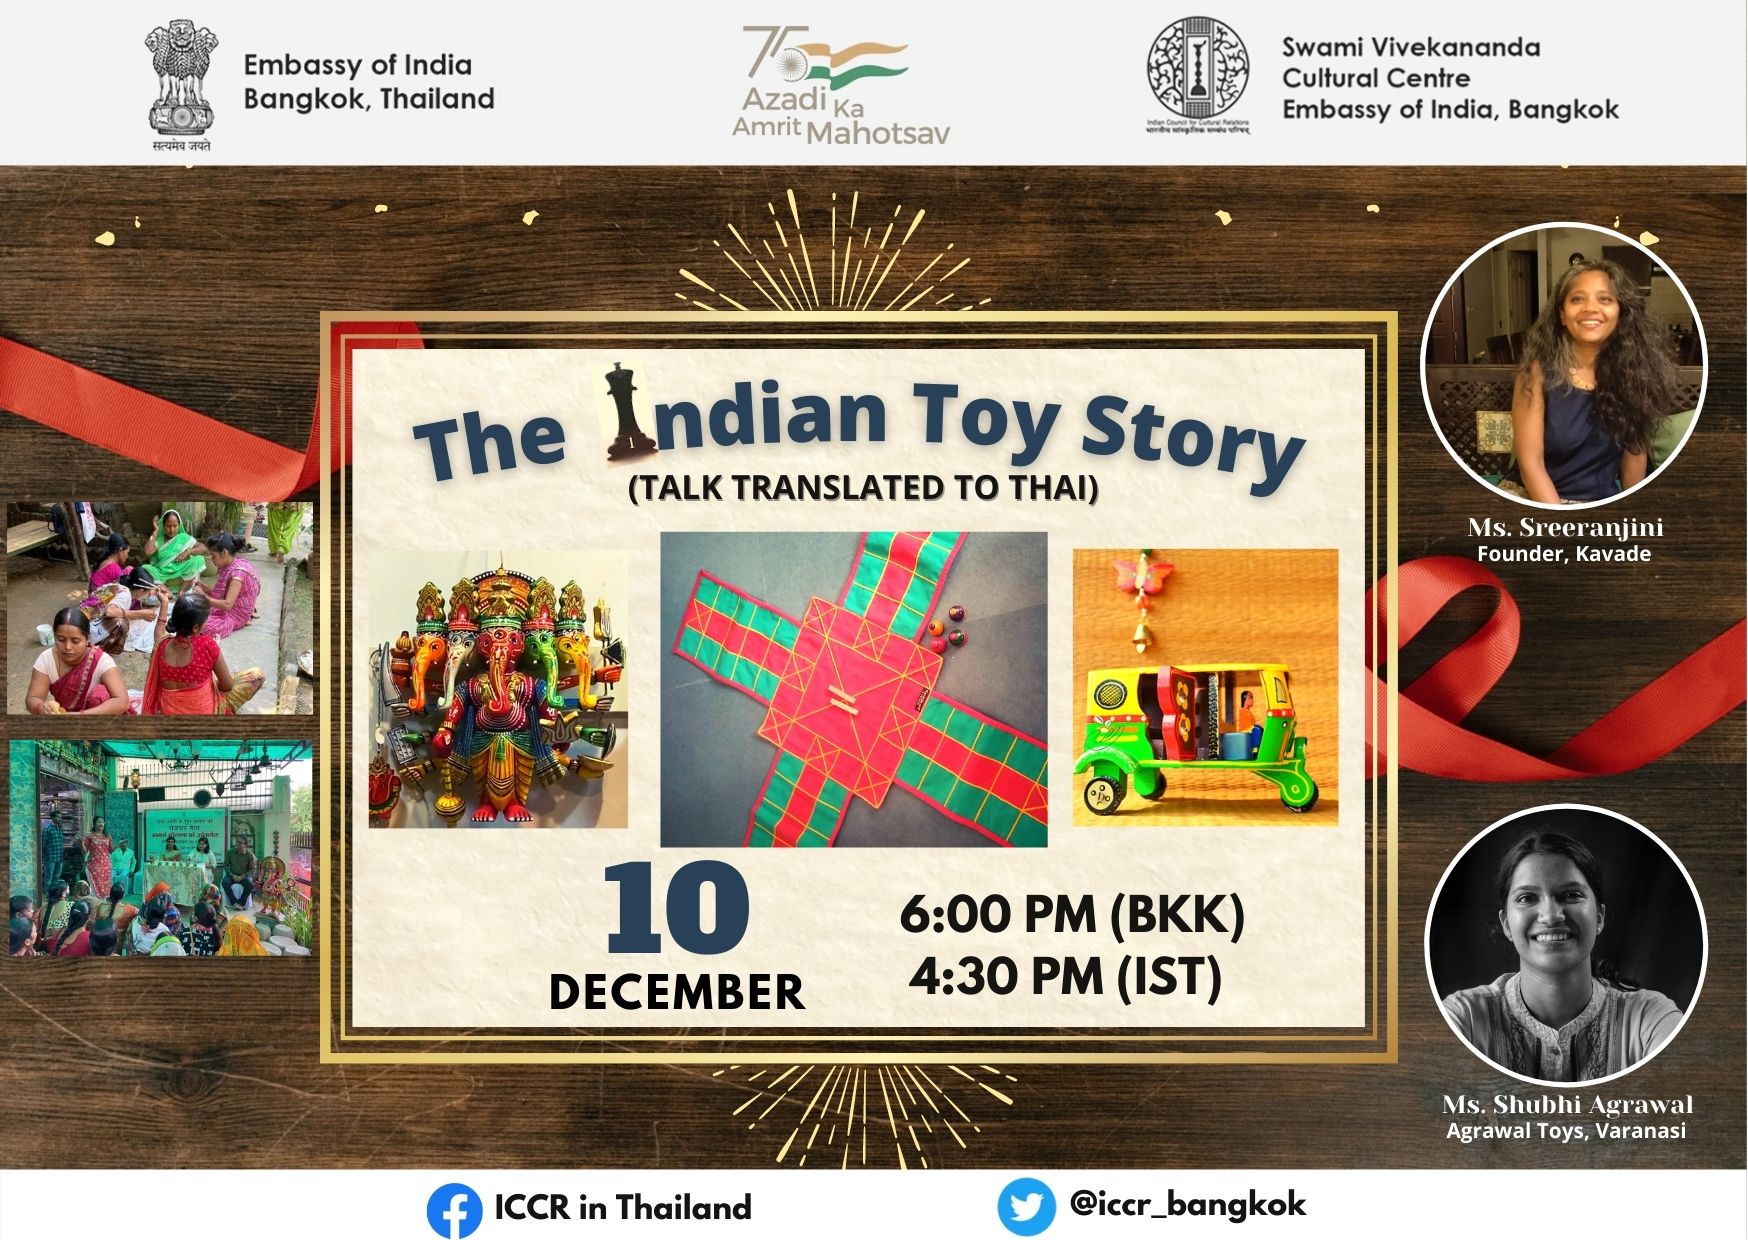 एसवीसीसी का कार्यक्रम "द इंडियन टॉय स्टोरी" प्रस्तुत कर रहा है जो भारत के खिलौनों और बोर्ड गेम को प्रदर्शित करता है। वक्ताओं में कावड़े, बेंगलुरु की सुश्री श्रीरंजनी और सुश्री शुभी अग्रवाल, वाराणसी हैं।